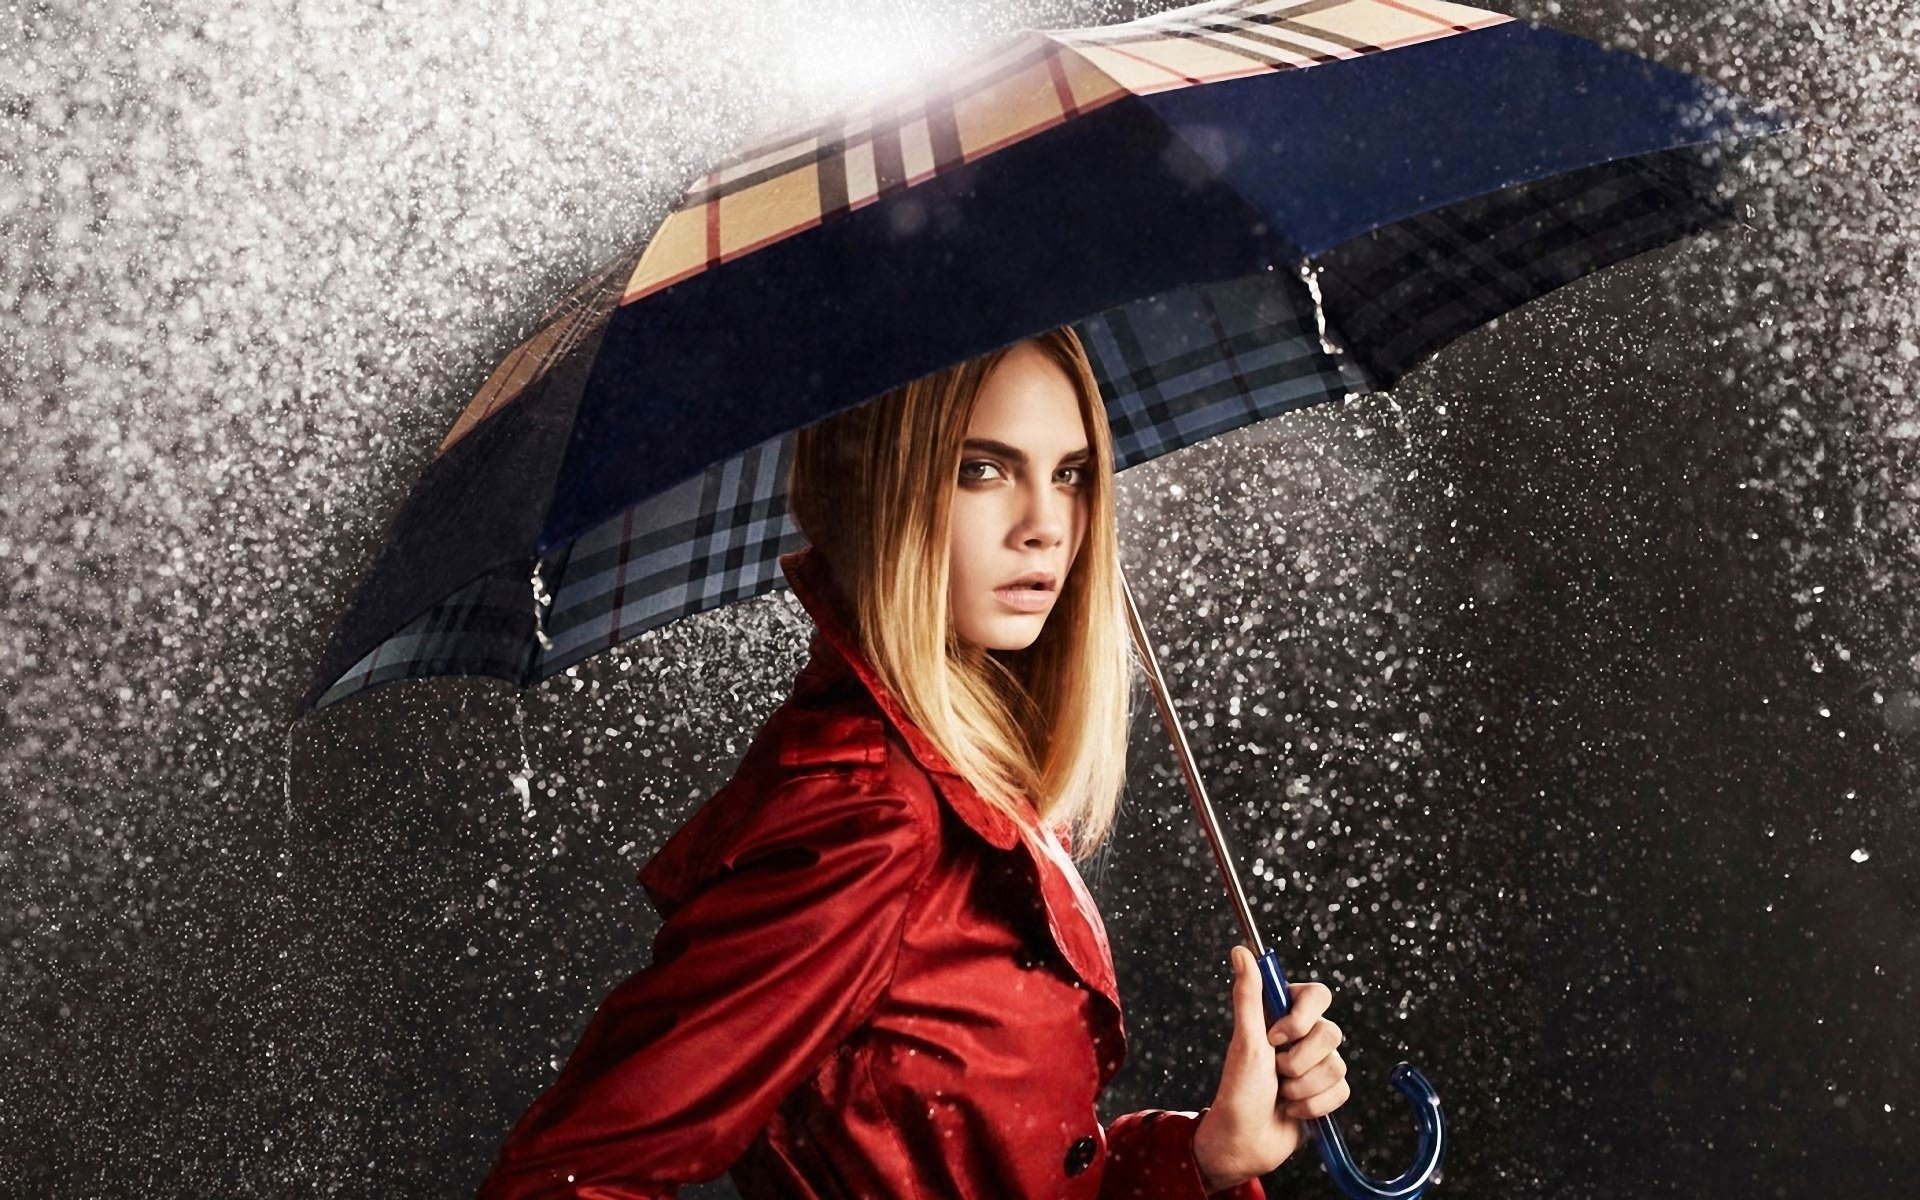 Hd Wallpaper - Fashion Shoot In The Rain , HD Wallpaper & Backgrounds